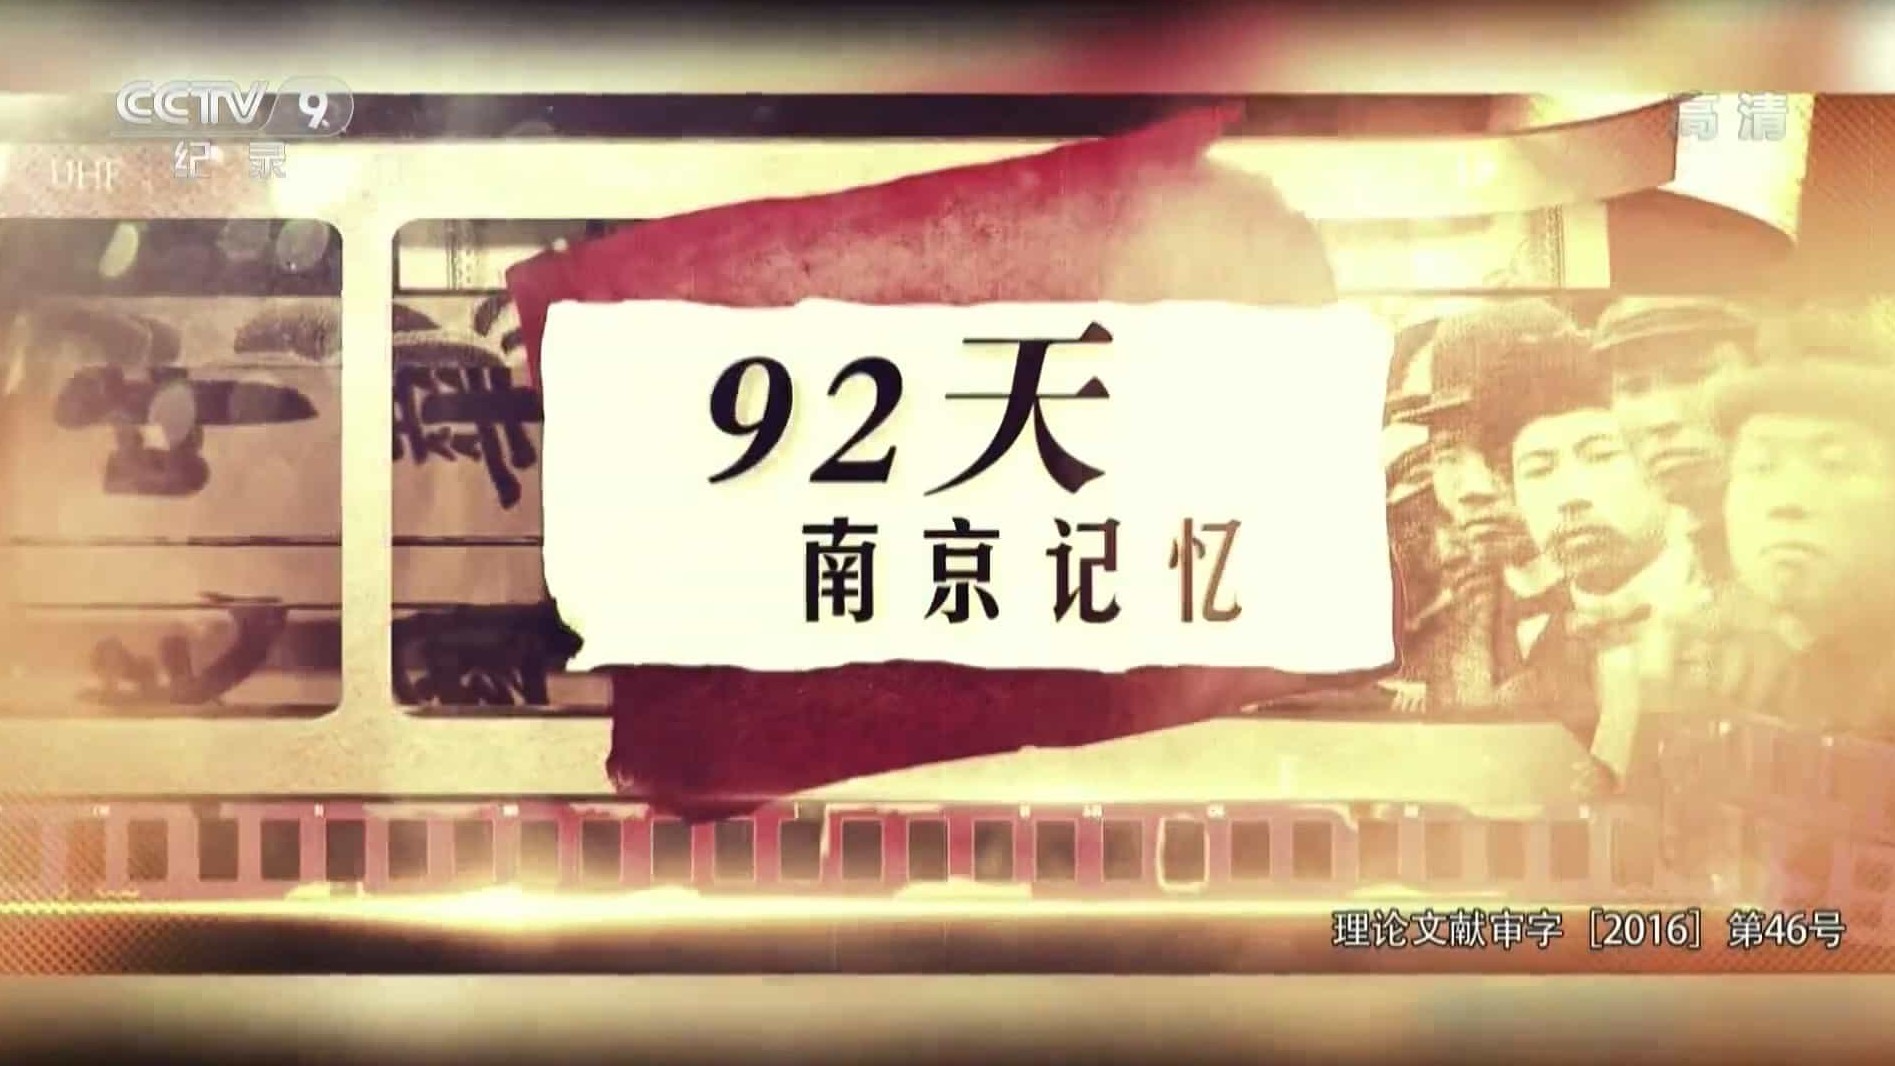 央视纪录片《92天，南京记忆 2015》汉语中字 1080P